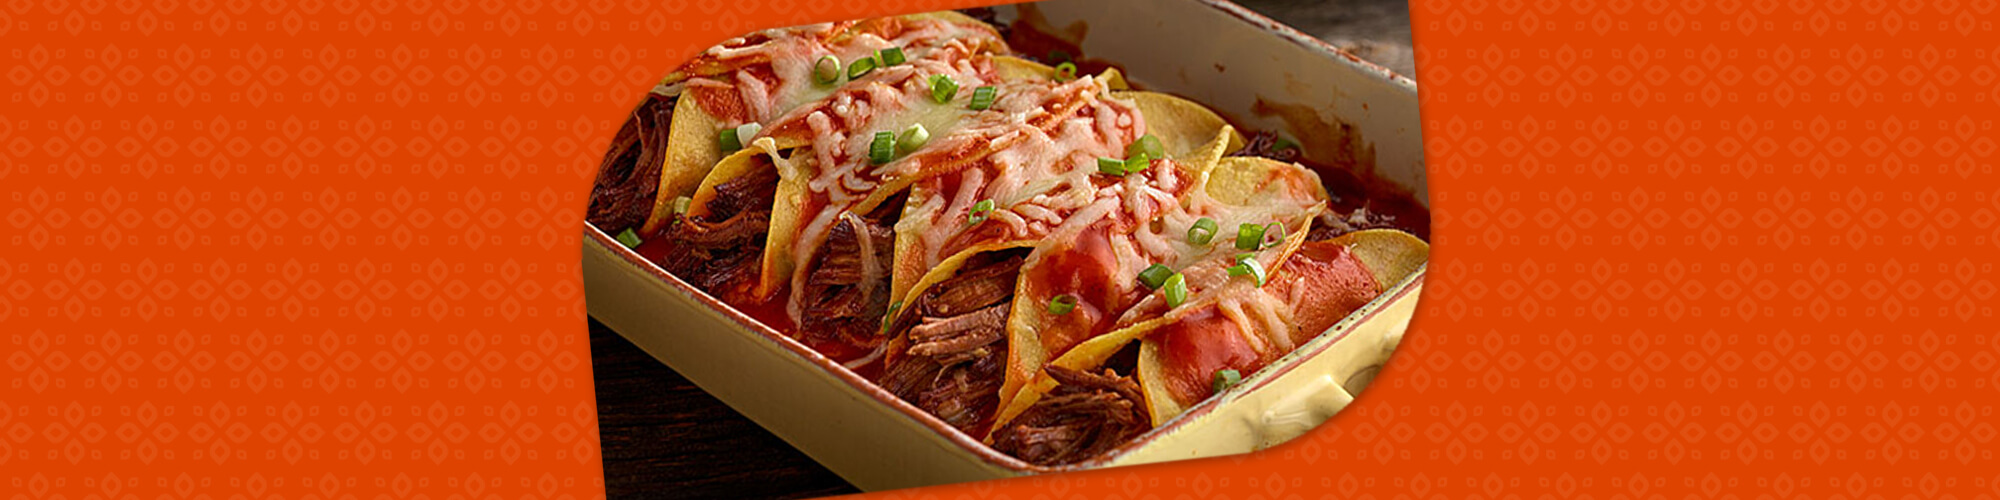 Salsas shredded beef enchiladas